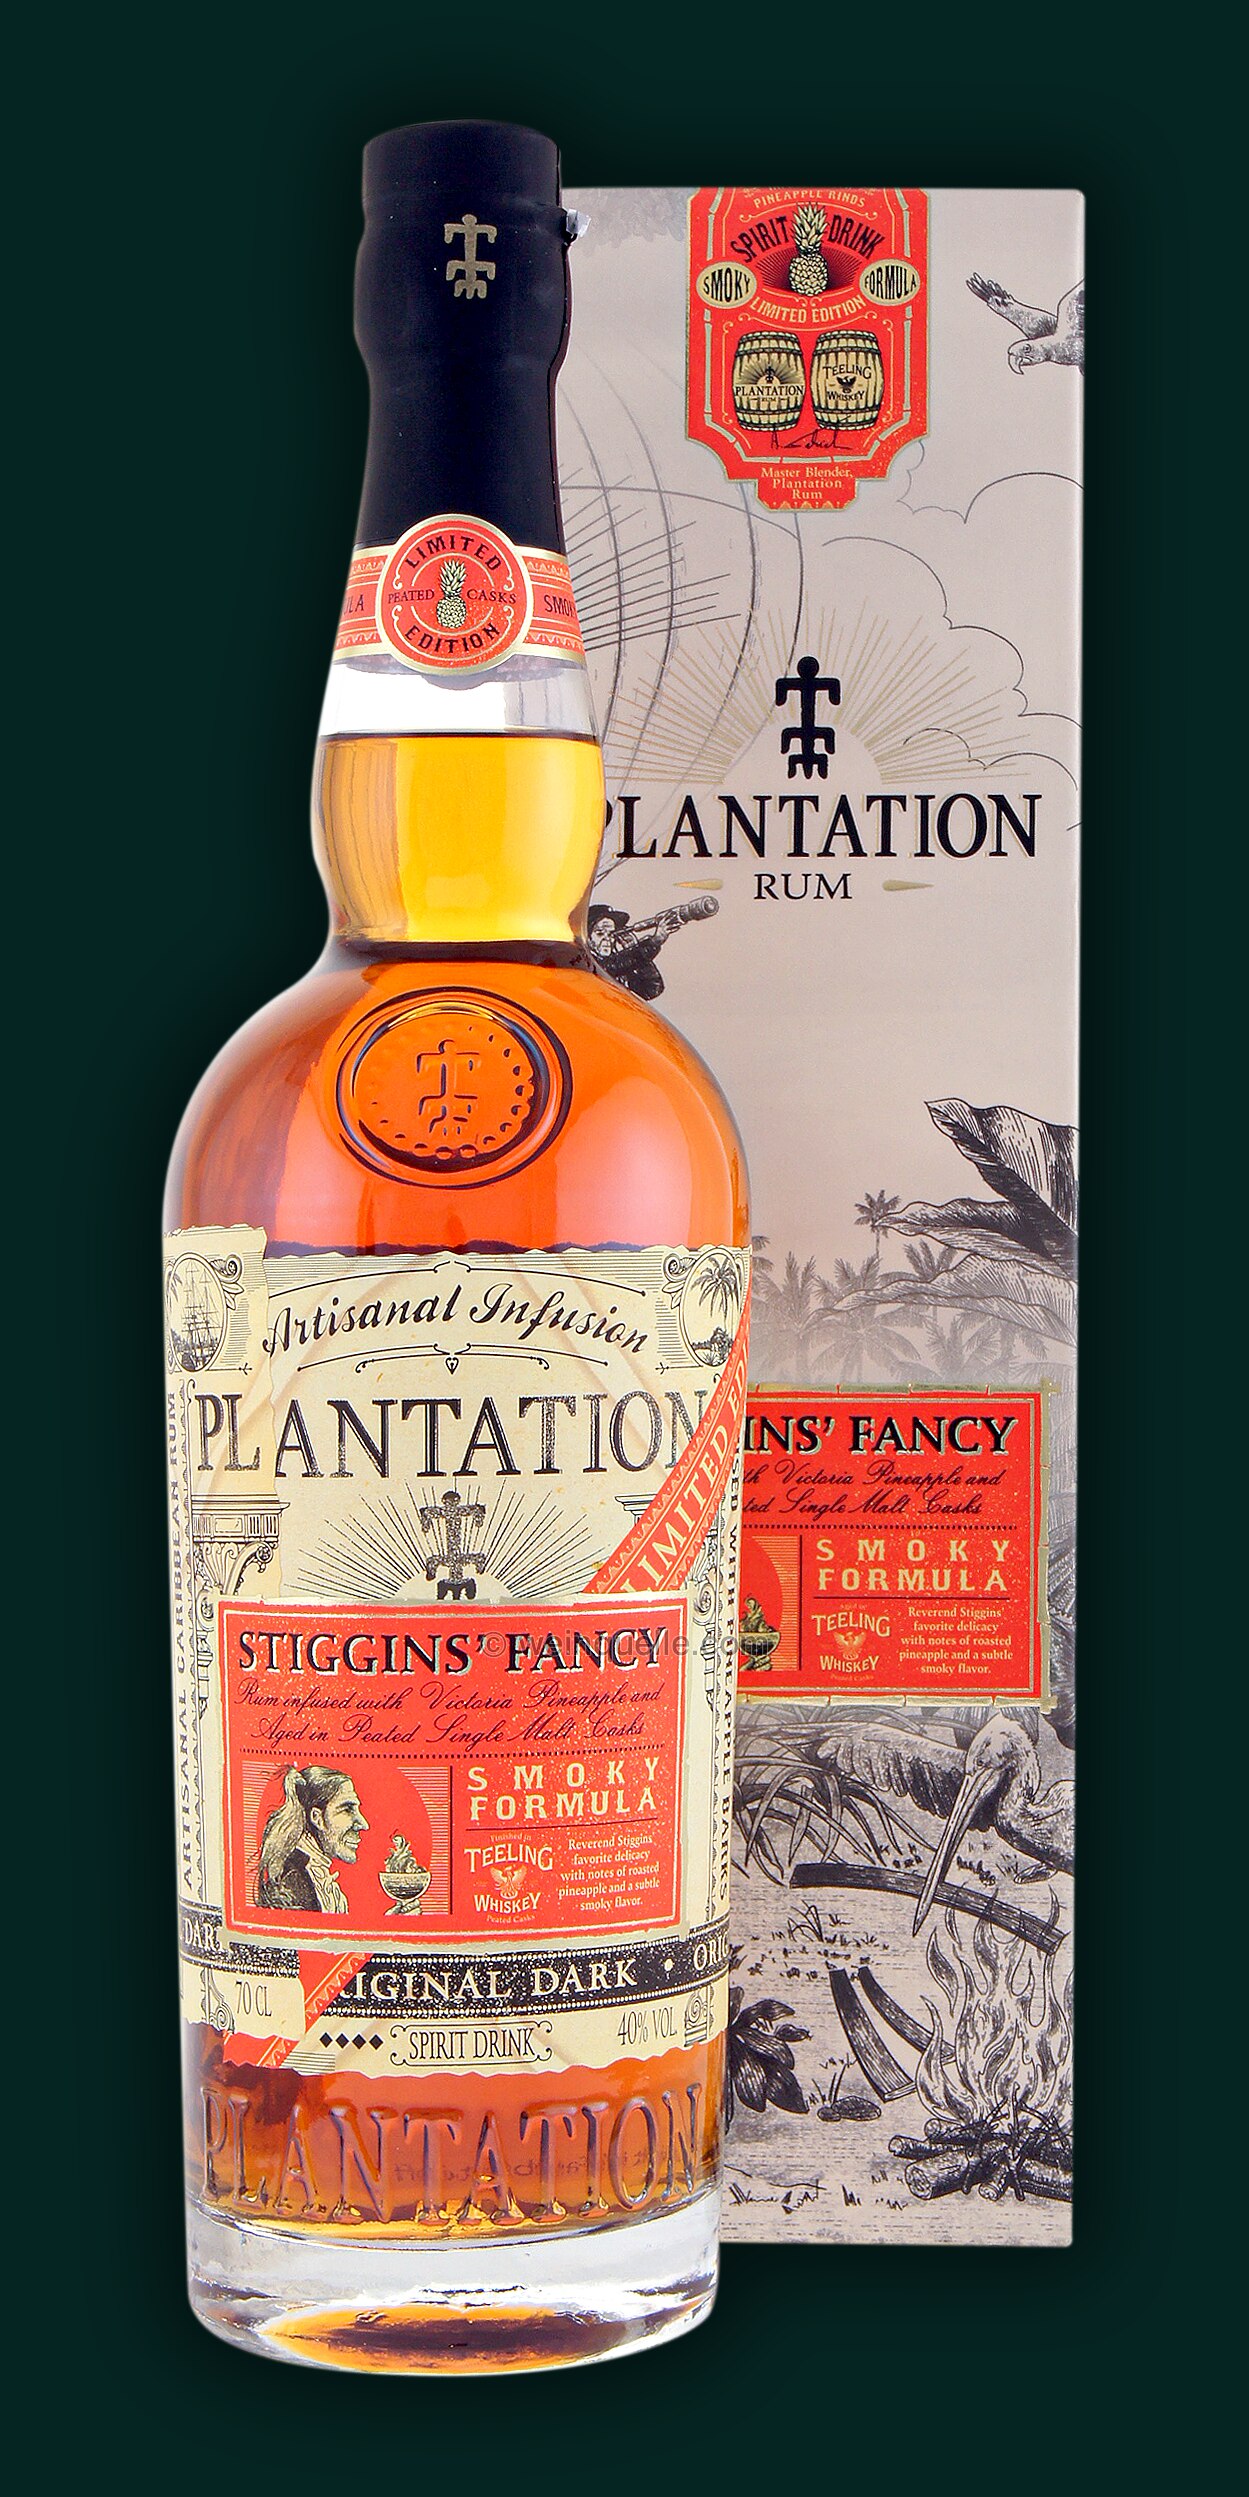 Fancy Stiggins Formula Smoky Pineapple Plantation Weinquelle - Lühmann